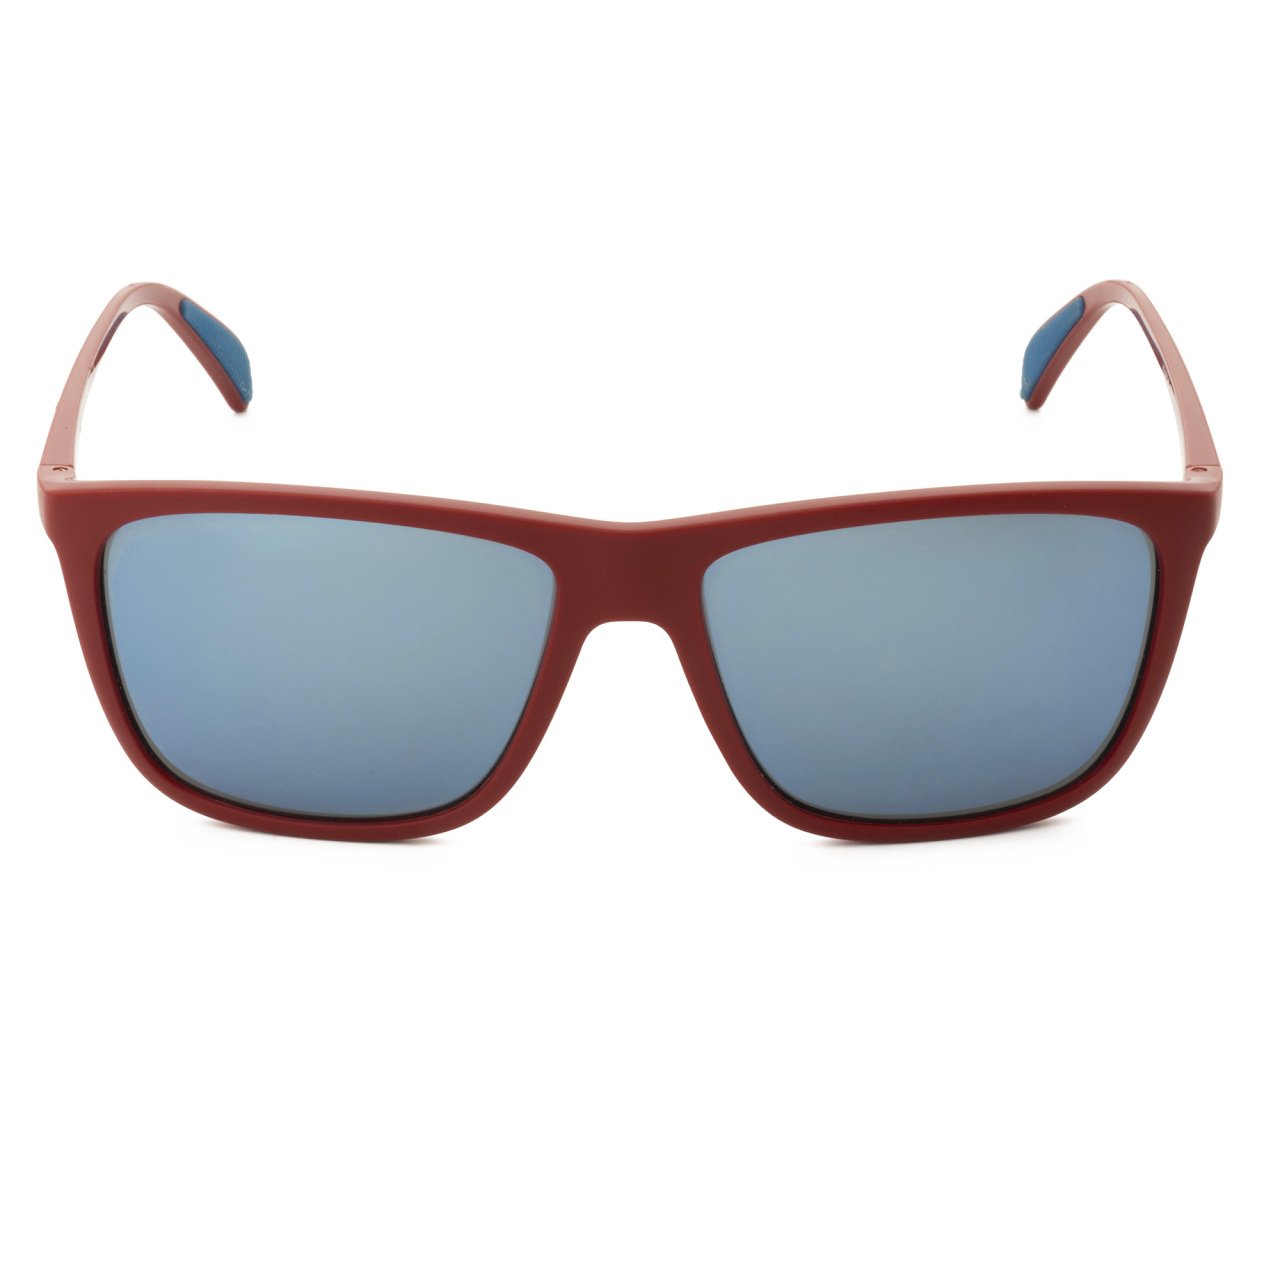 Vogue VO2512-S Unisex Sunglasses